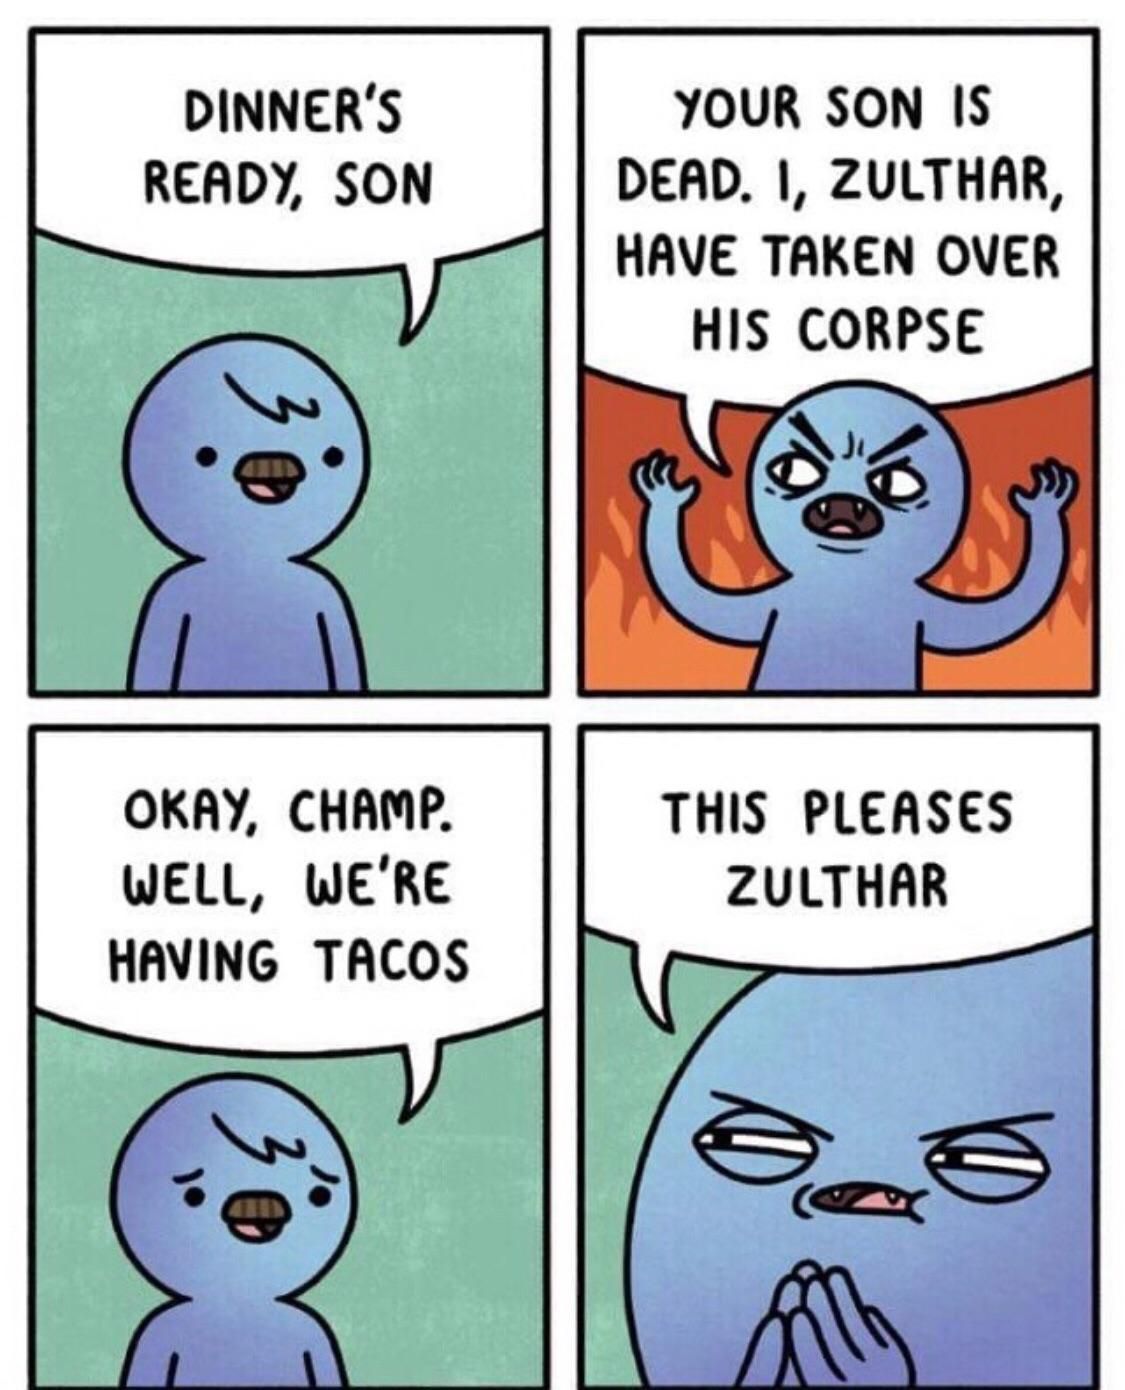 Tacos please Zulthar